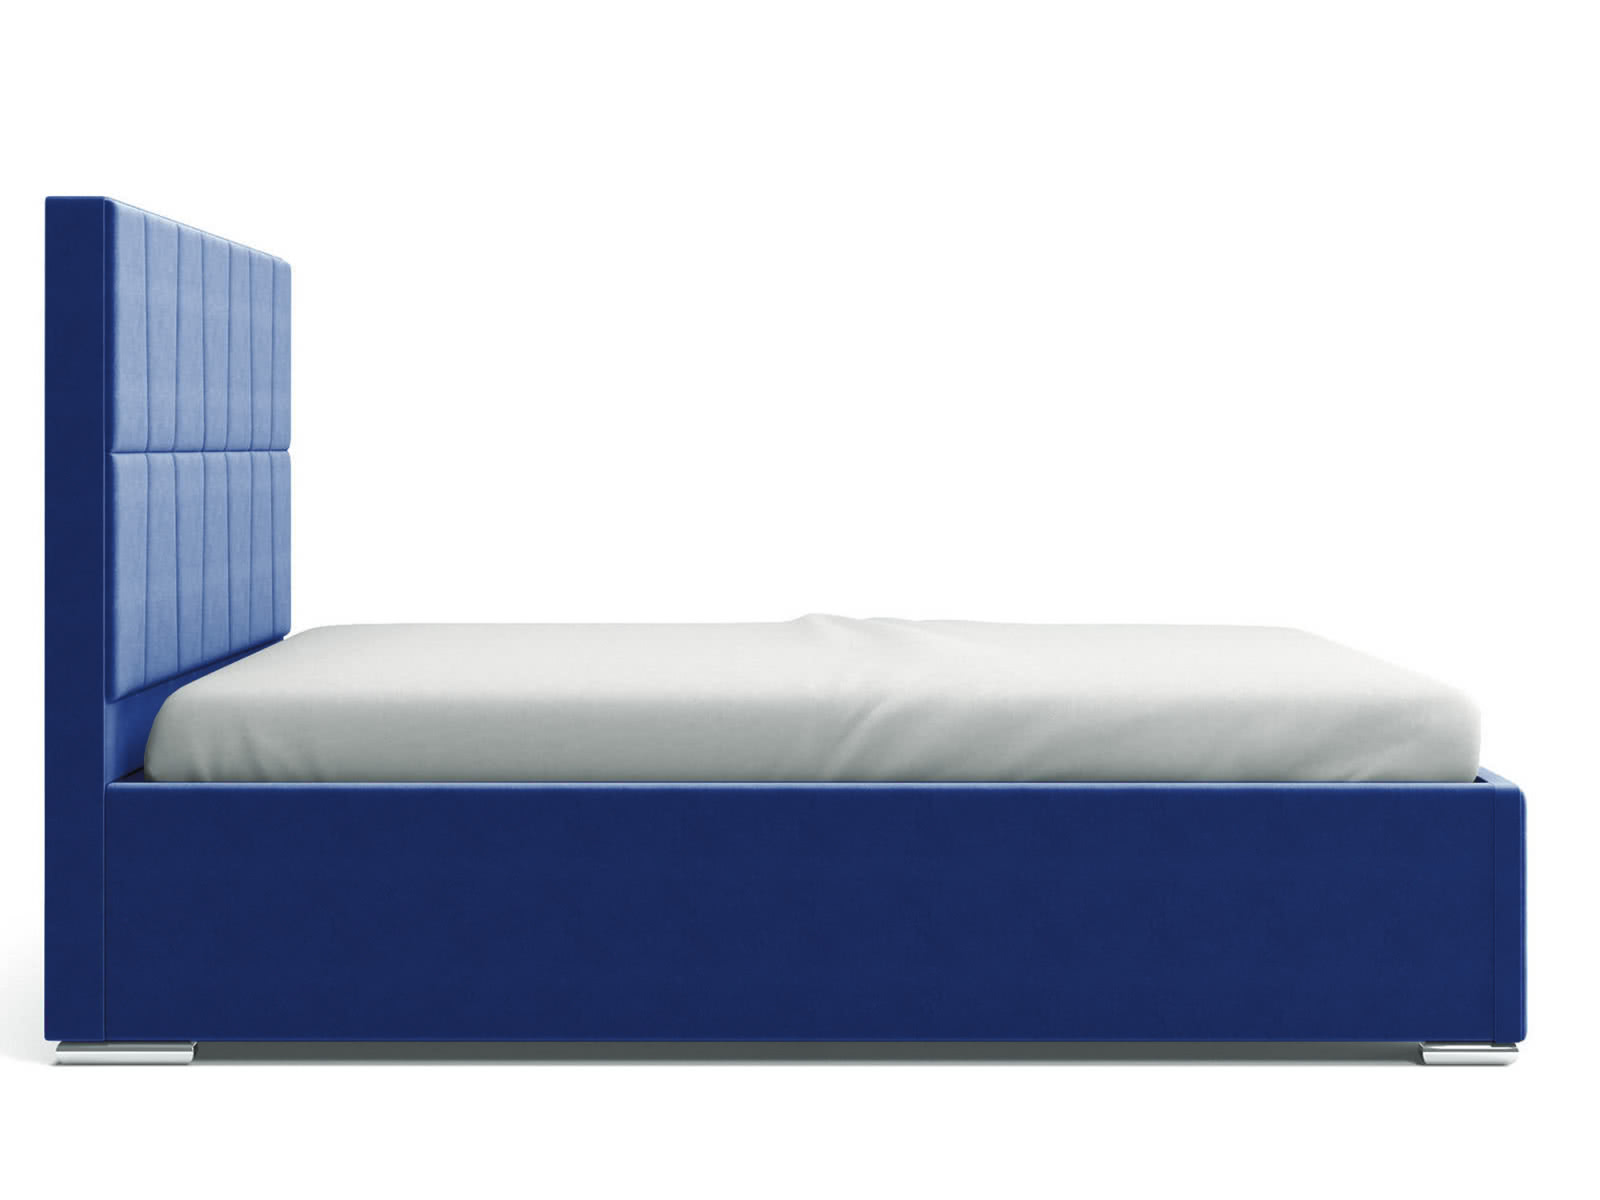 Купить кровать СтолЛайн Кровать СтолЛайн Пассаж 140x200 с подъемным механизмом дешево на официальном сайте